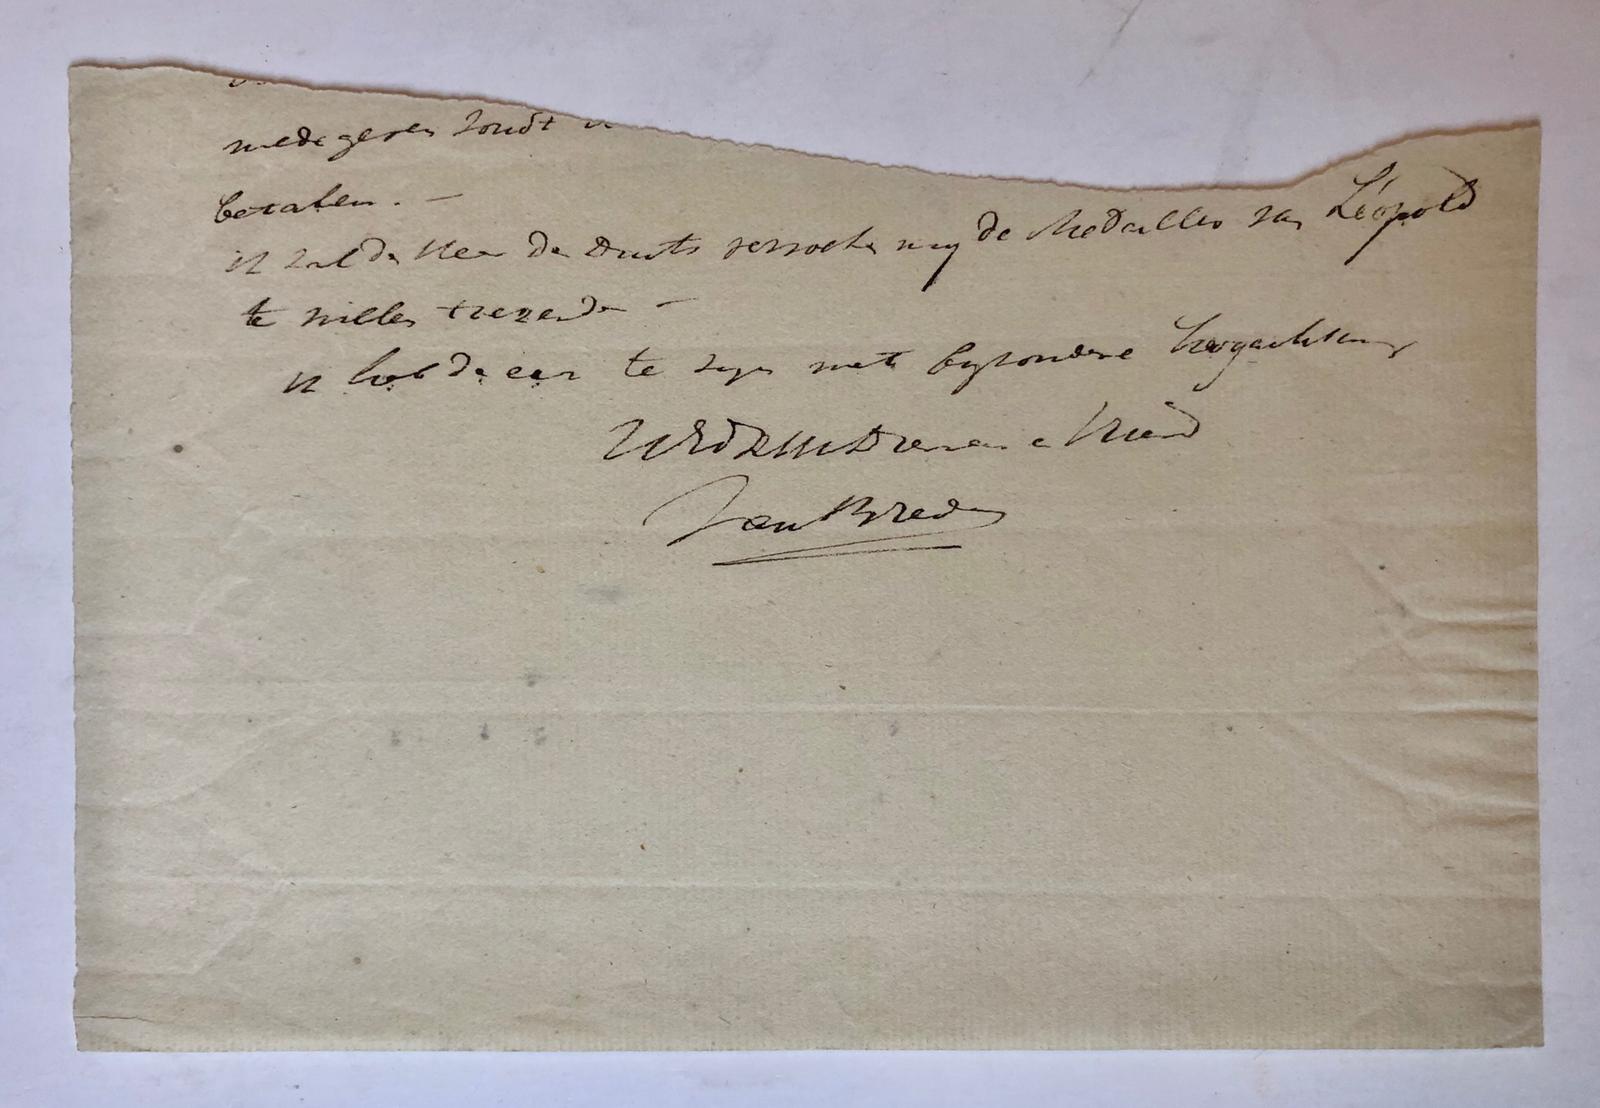  - [Manuscript BREDA, VAN] Fragment van een brief geschreven en ondertekend door Van Breda, 1 p., z.j.